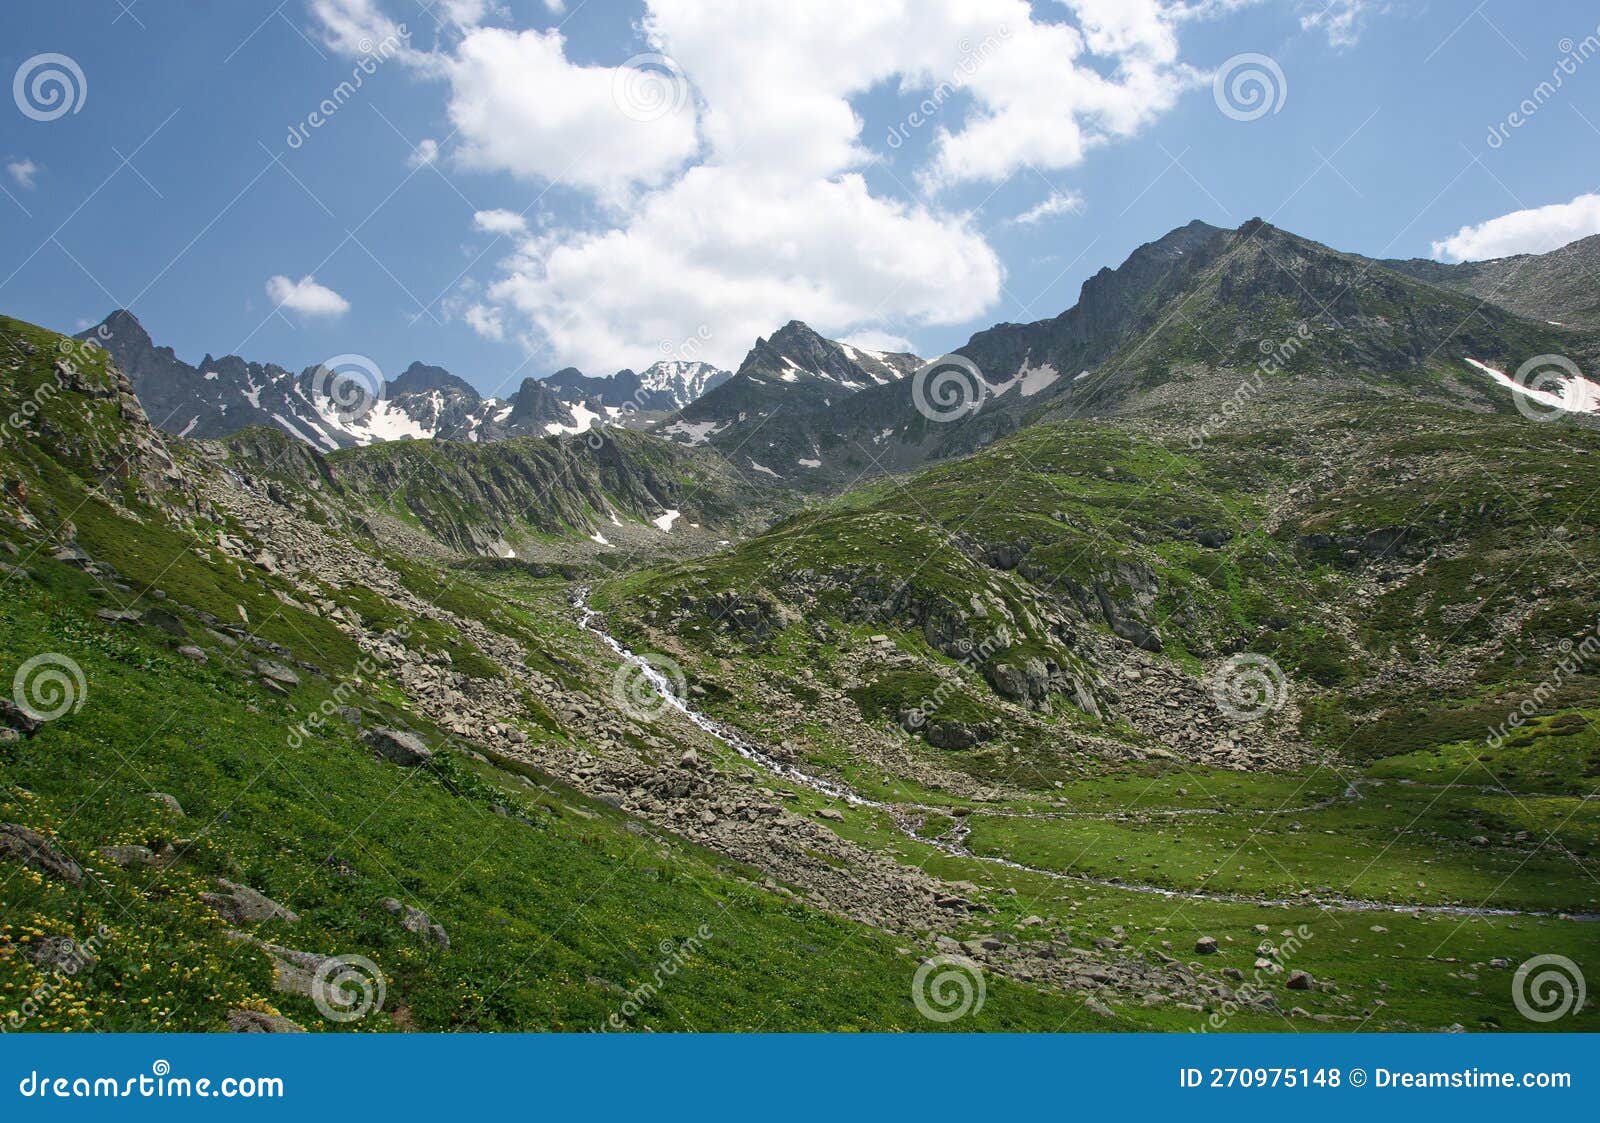 Kackar Mountains - Rize stock photo. Image of alps, republic - 270975148